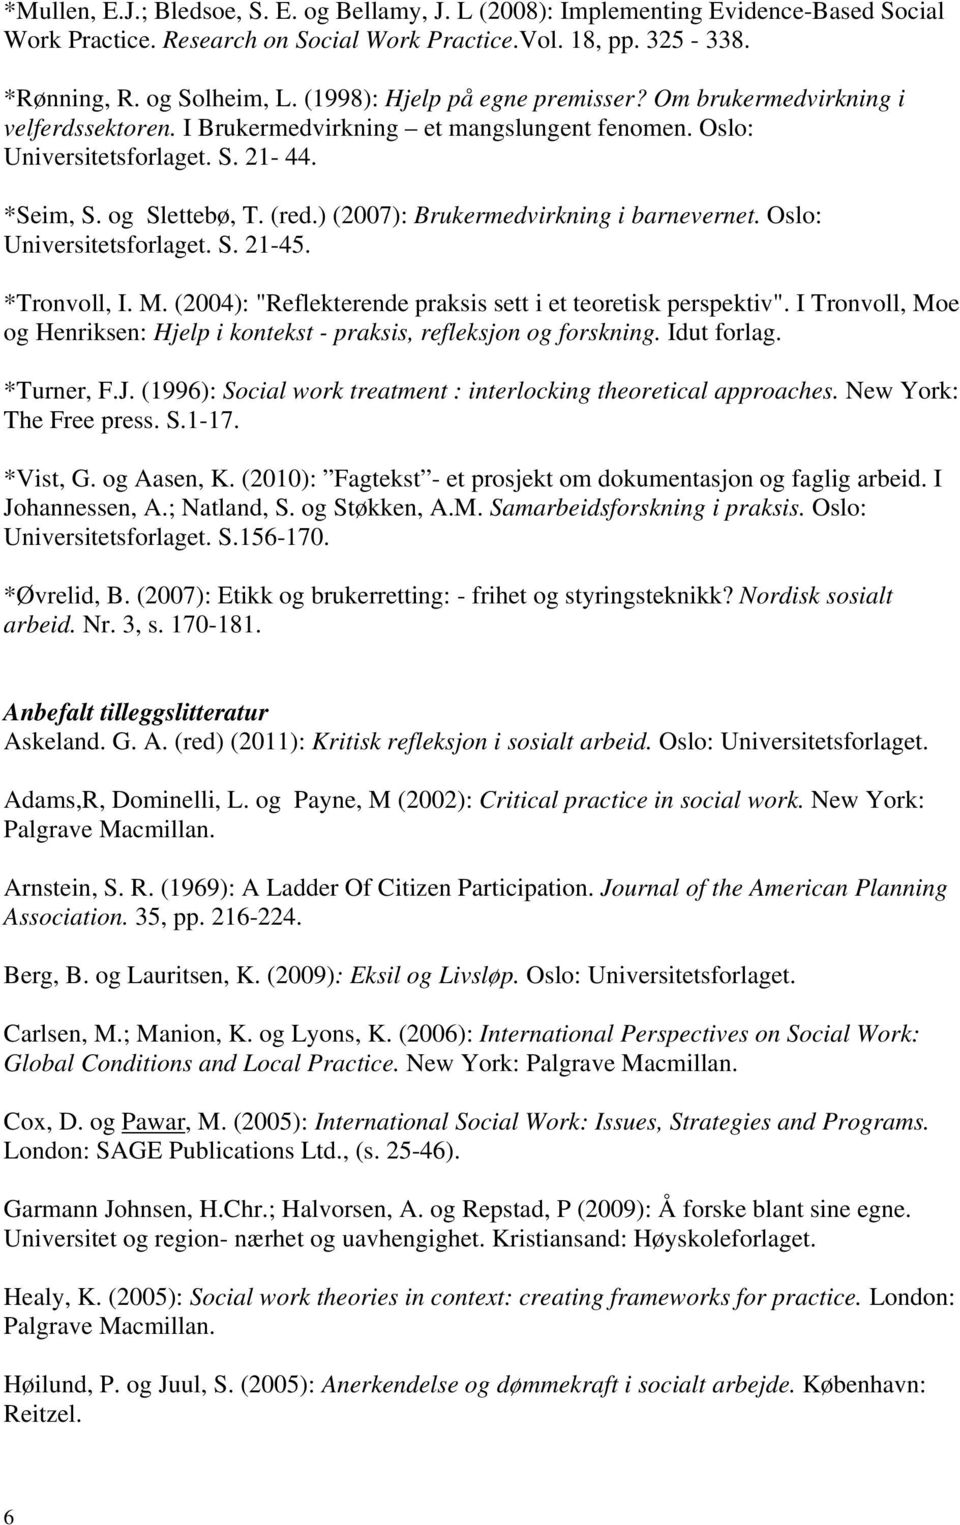 ) (2007): Brukermedvirkning i barnevernet. Oslo: Universitetsforlaget. S. 21-45. *Tronvoll, I. M. (2004): "Reflekterende praksis sett i et teoretisk perspektiv".